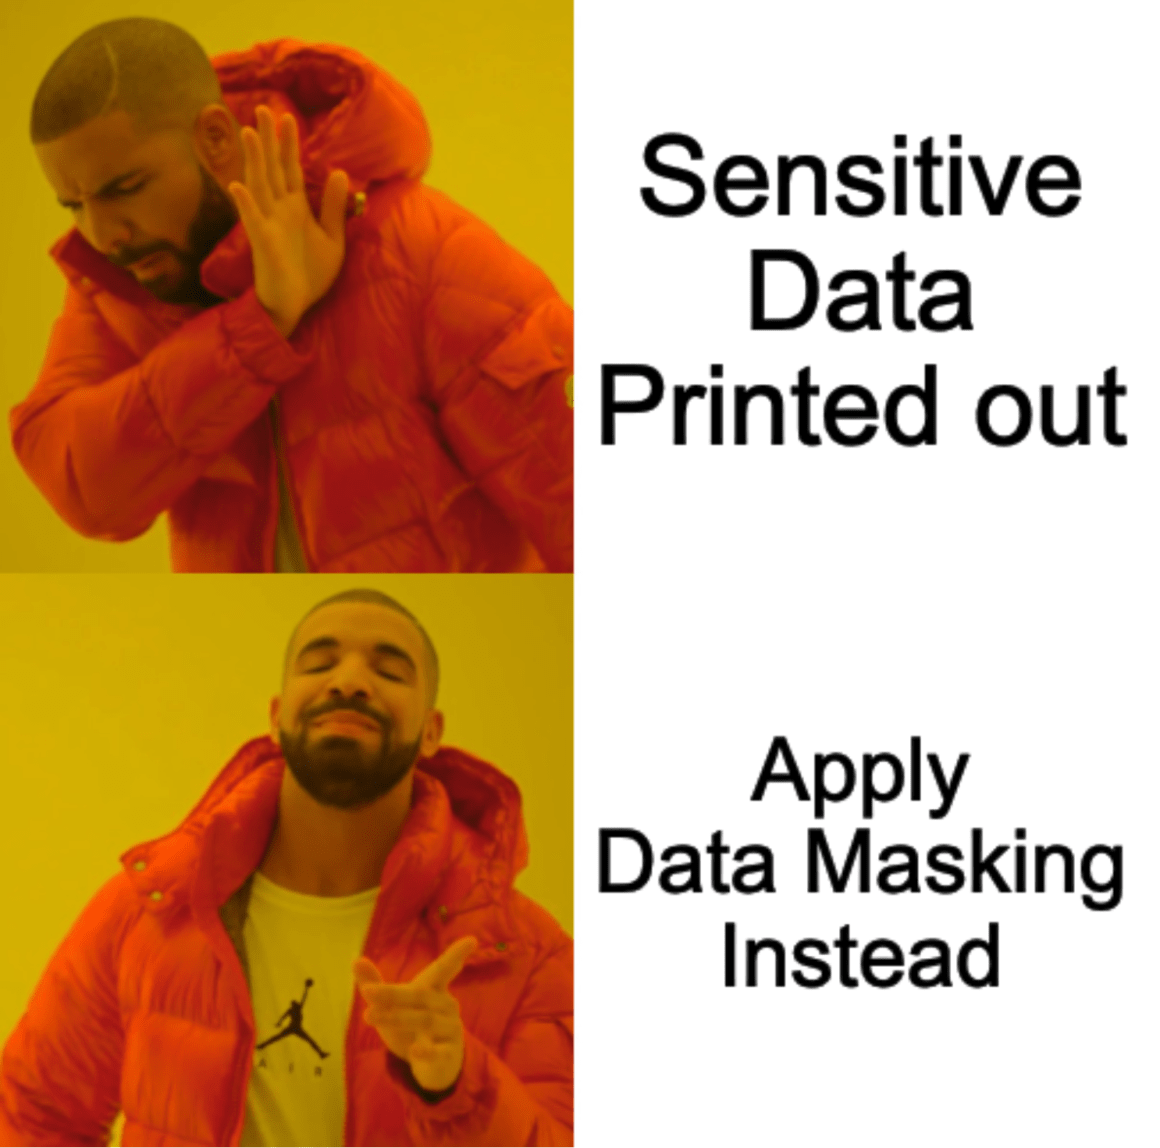 apply data masking on all sensitive data